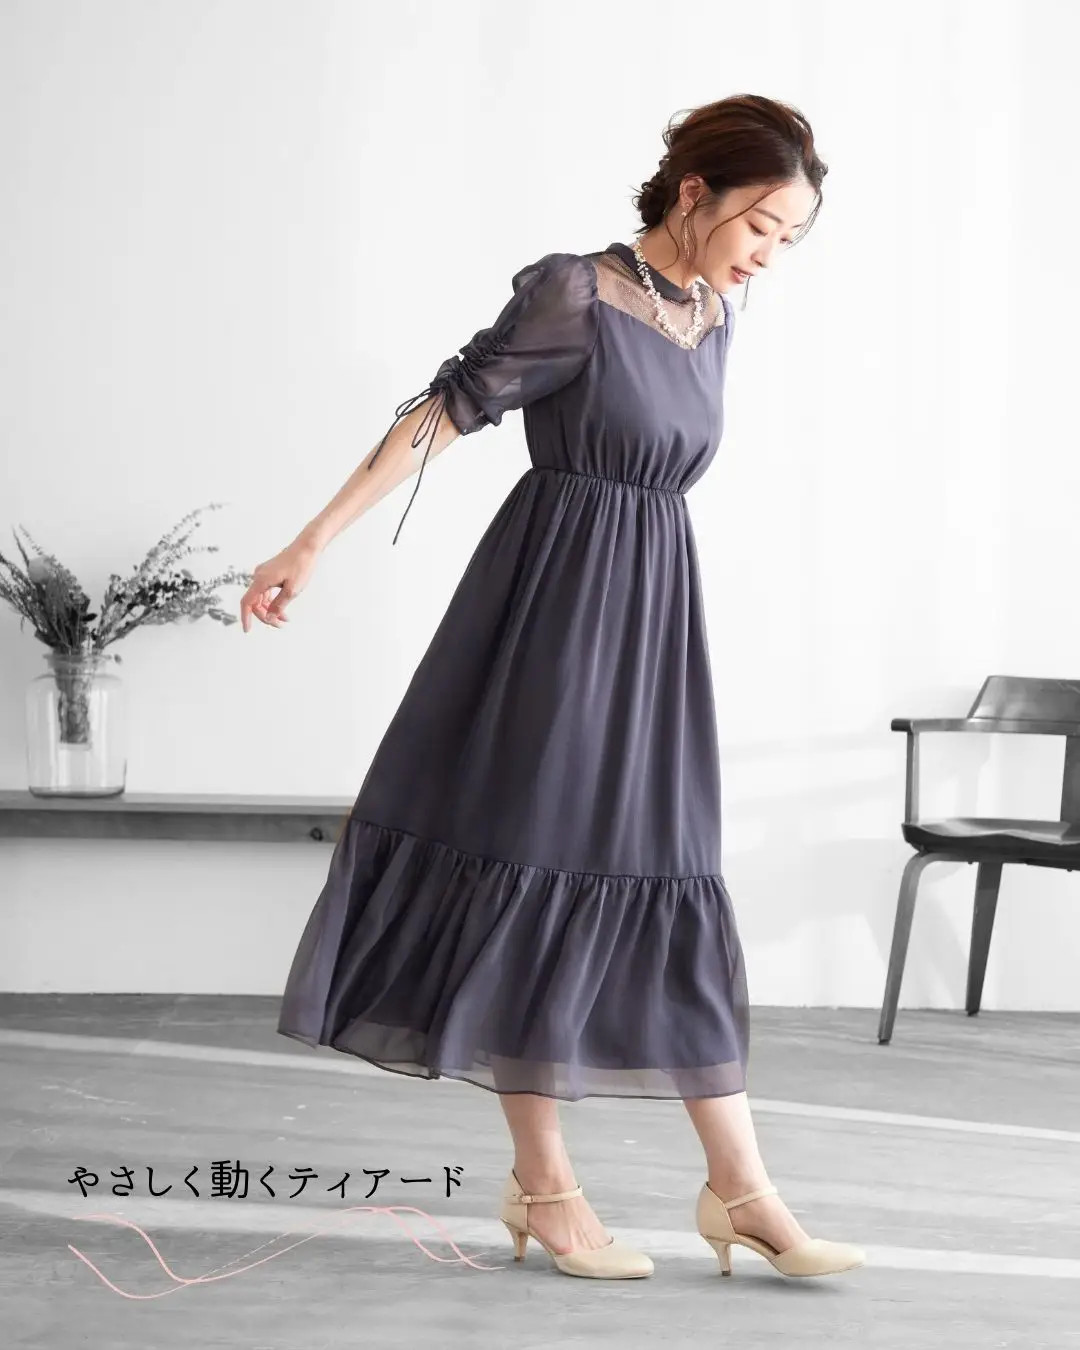 定期入れの ︎︎︎︎︎︎☑︎ 二次会ドレス | www.butiuae.com